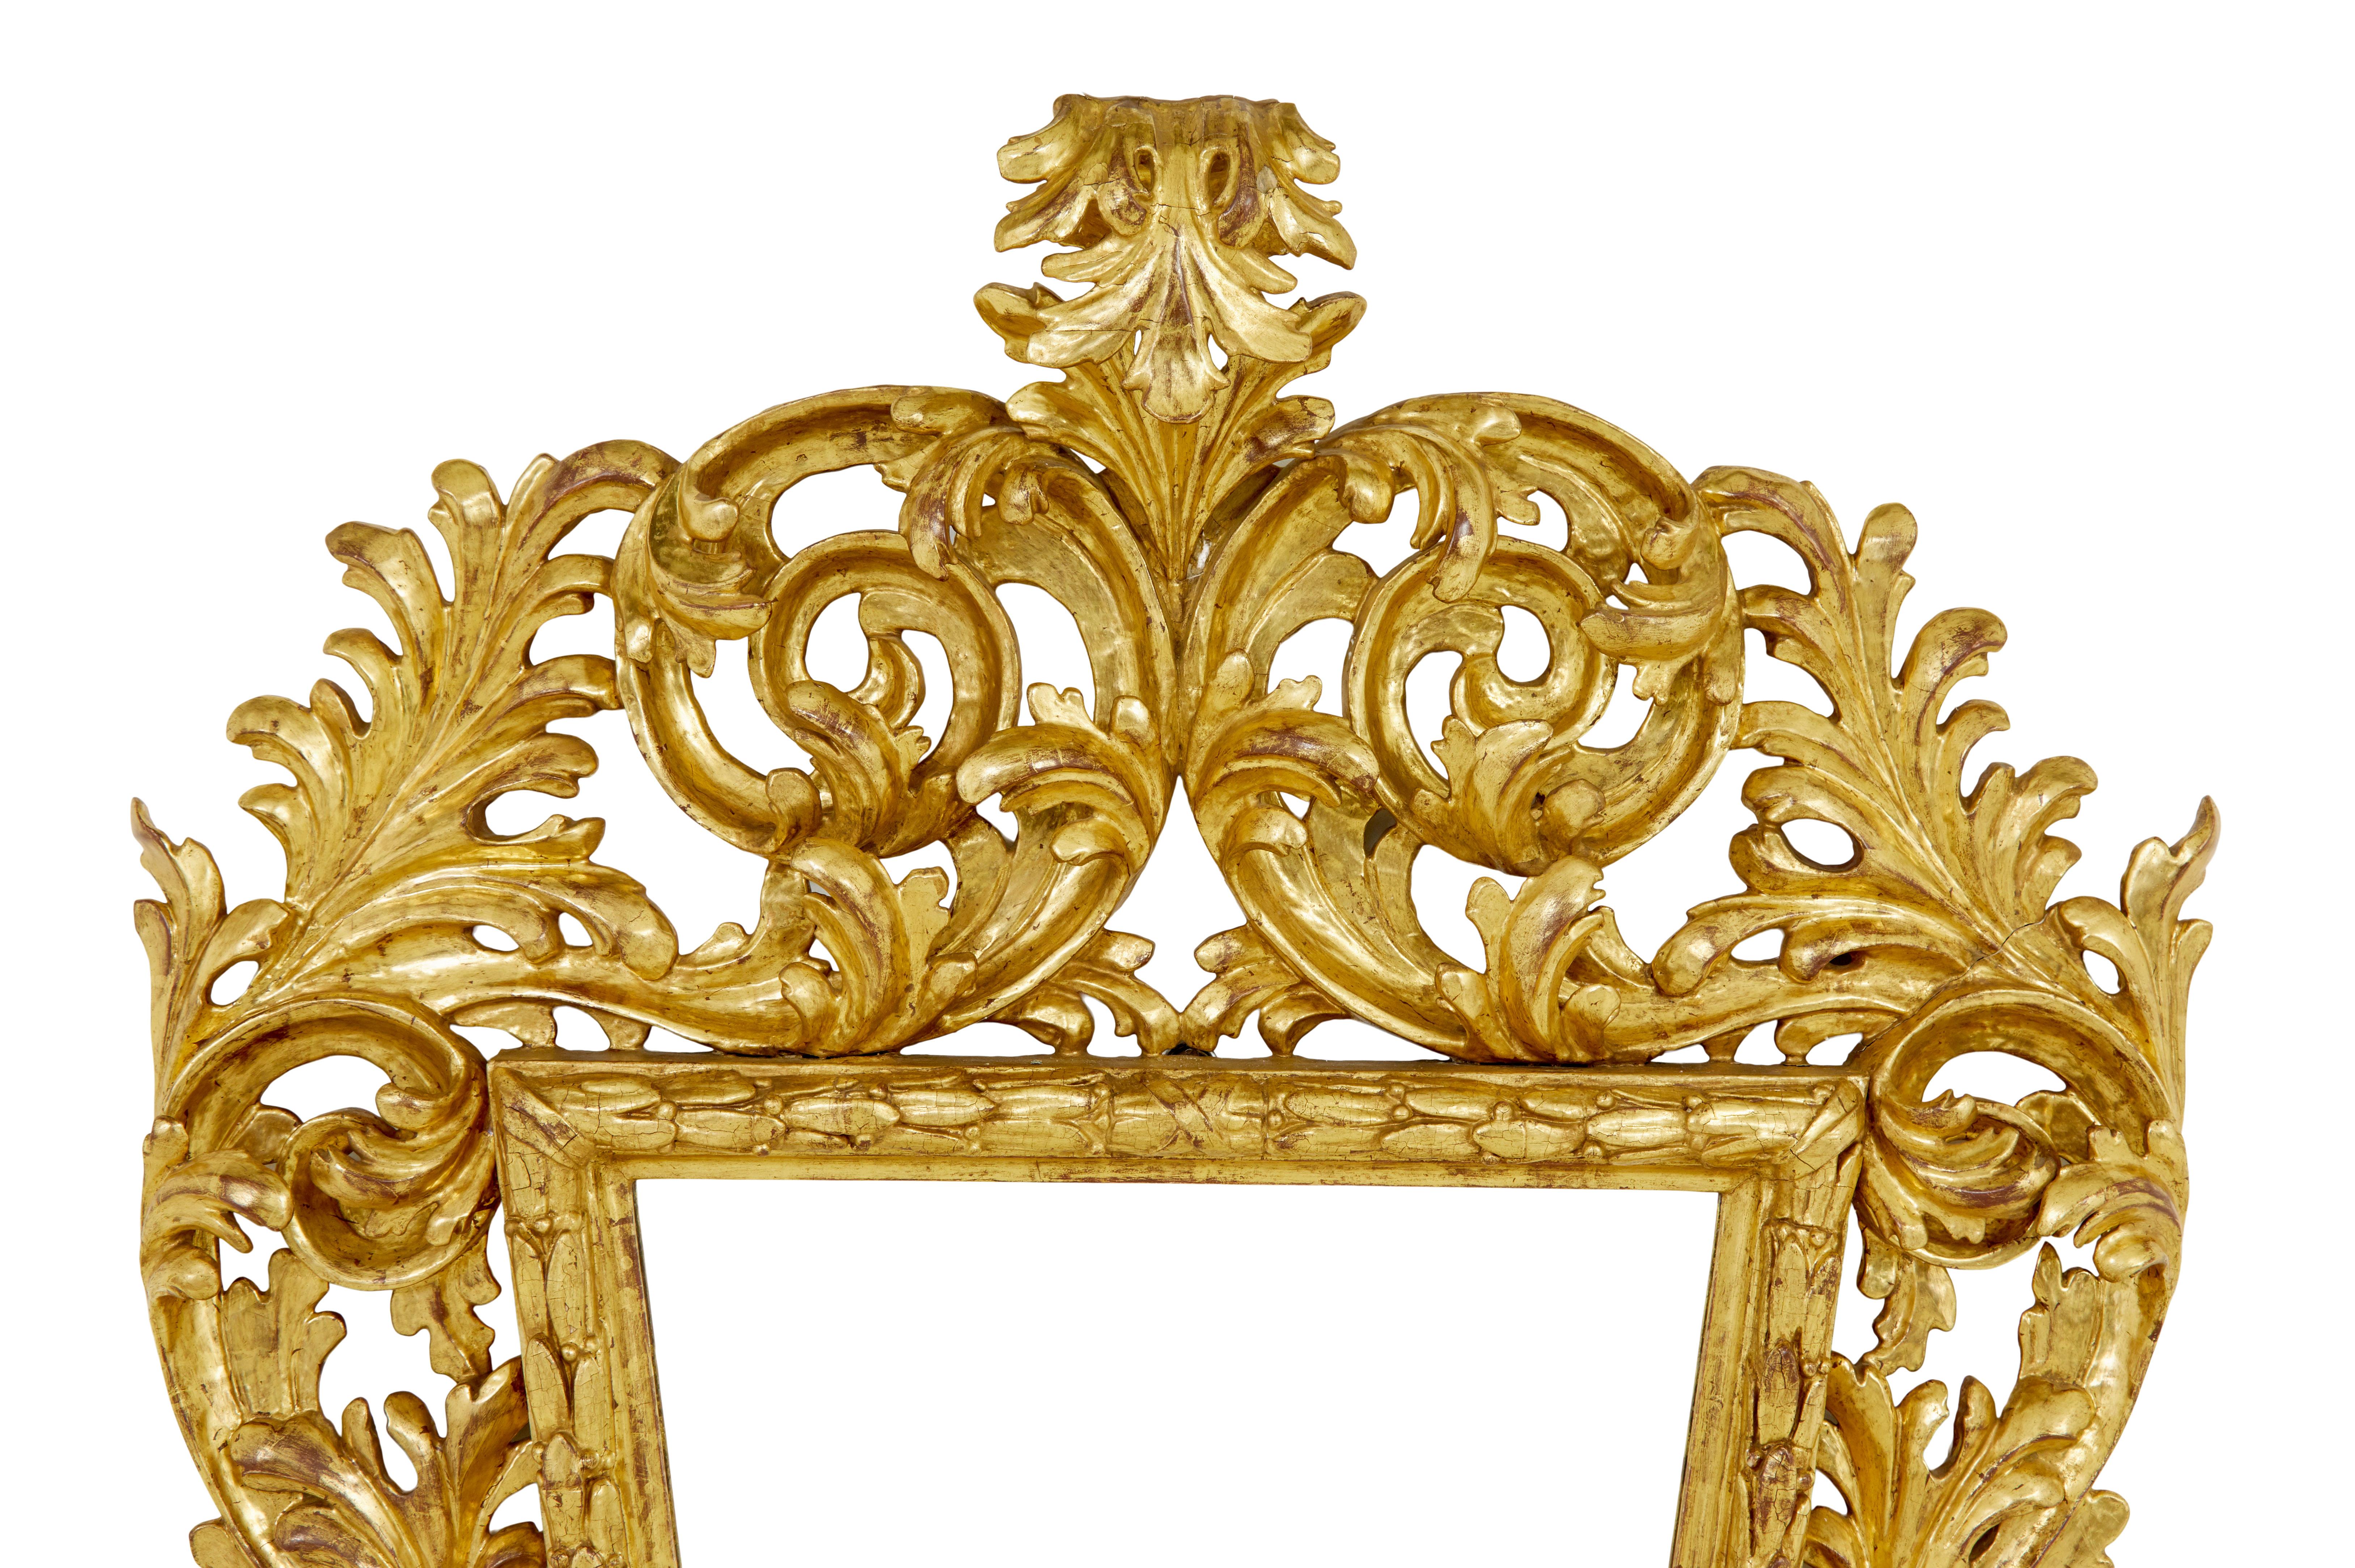 Italienischer Rokoko-Spiegel aus vergoldetem Holz, 18. Jahrhundert, um 1730.

Hervorragende Qualität Rokoko Zeitraum vergoldet Spiegel von großen Proportionen. Reichlich geschnitzter Rahmen mit viel Tiefe in der Schnitzerei. Swags auf der Oberseite